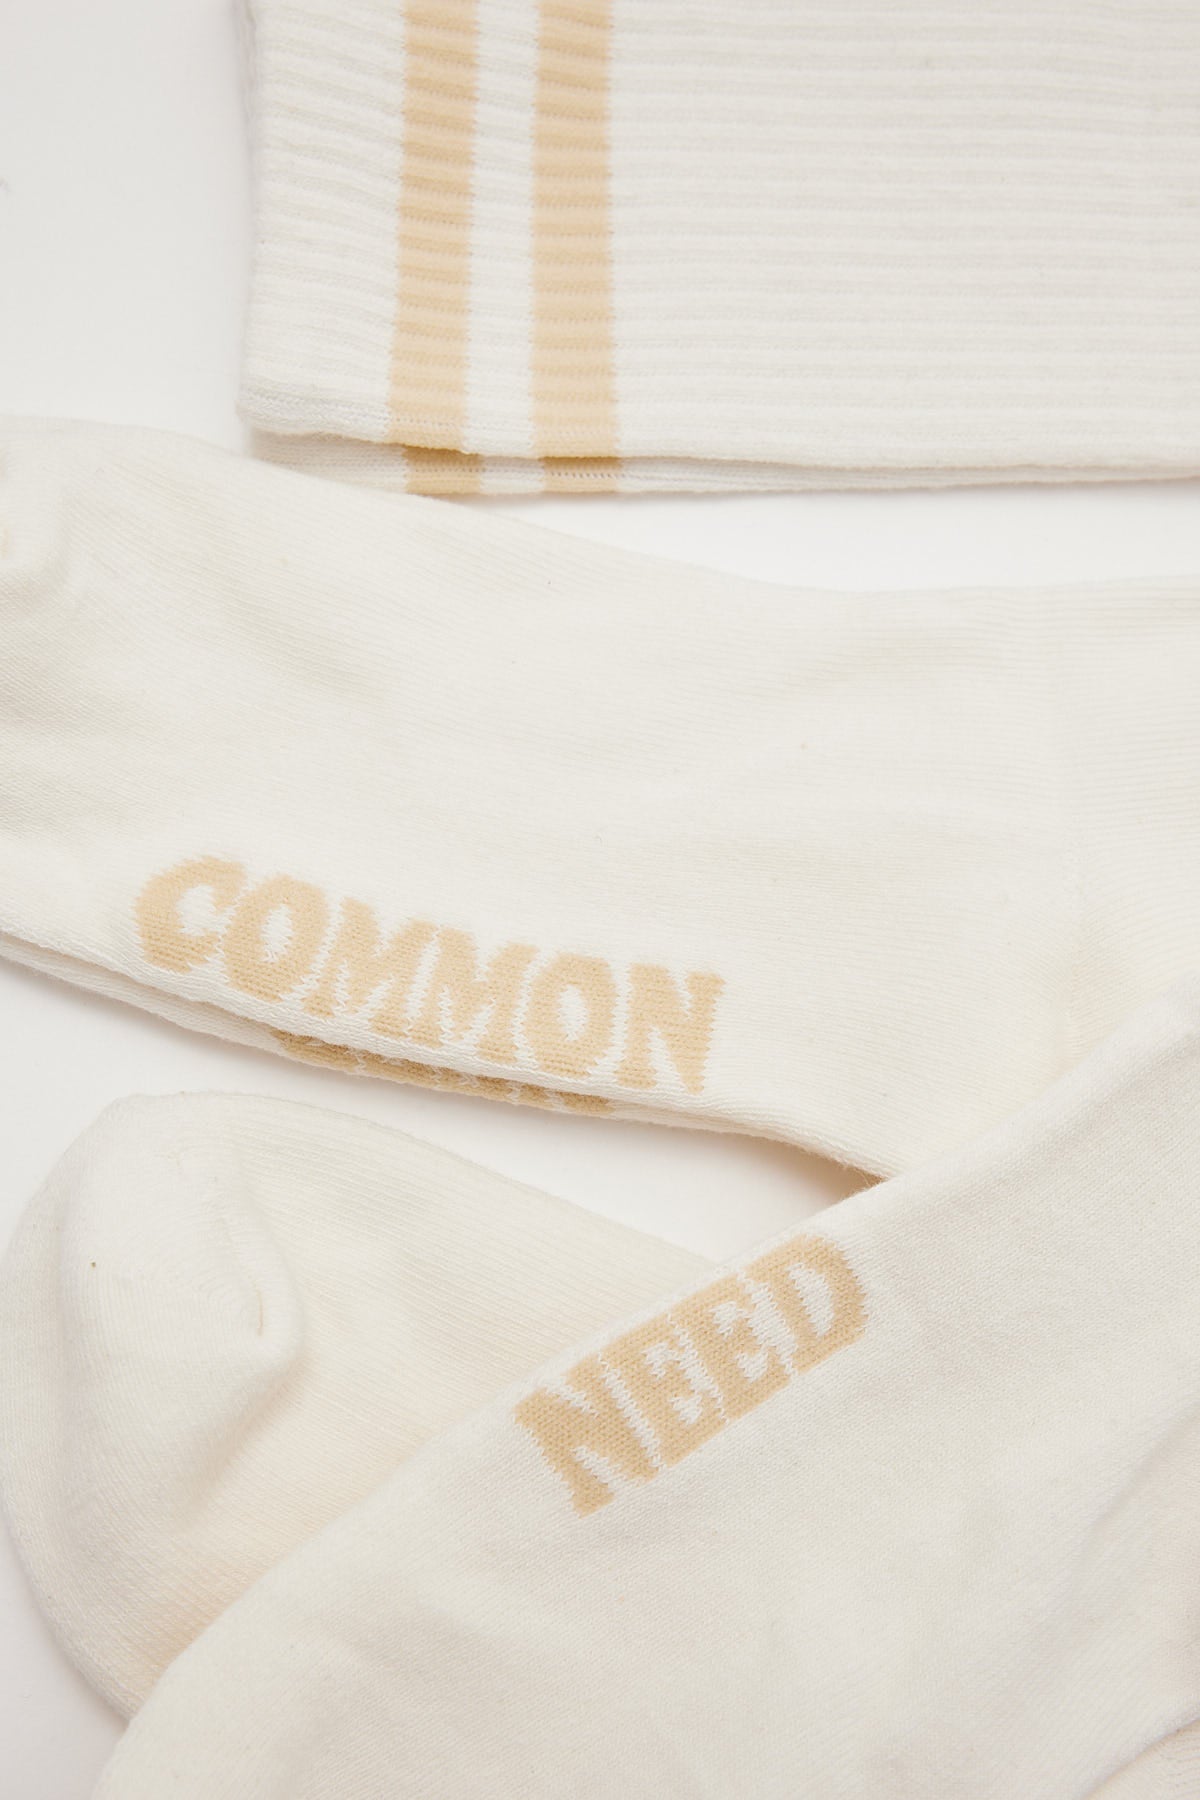 Common Need Letterman Socks 3 Pack Off White